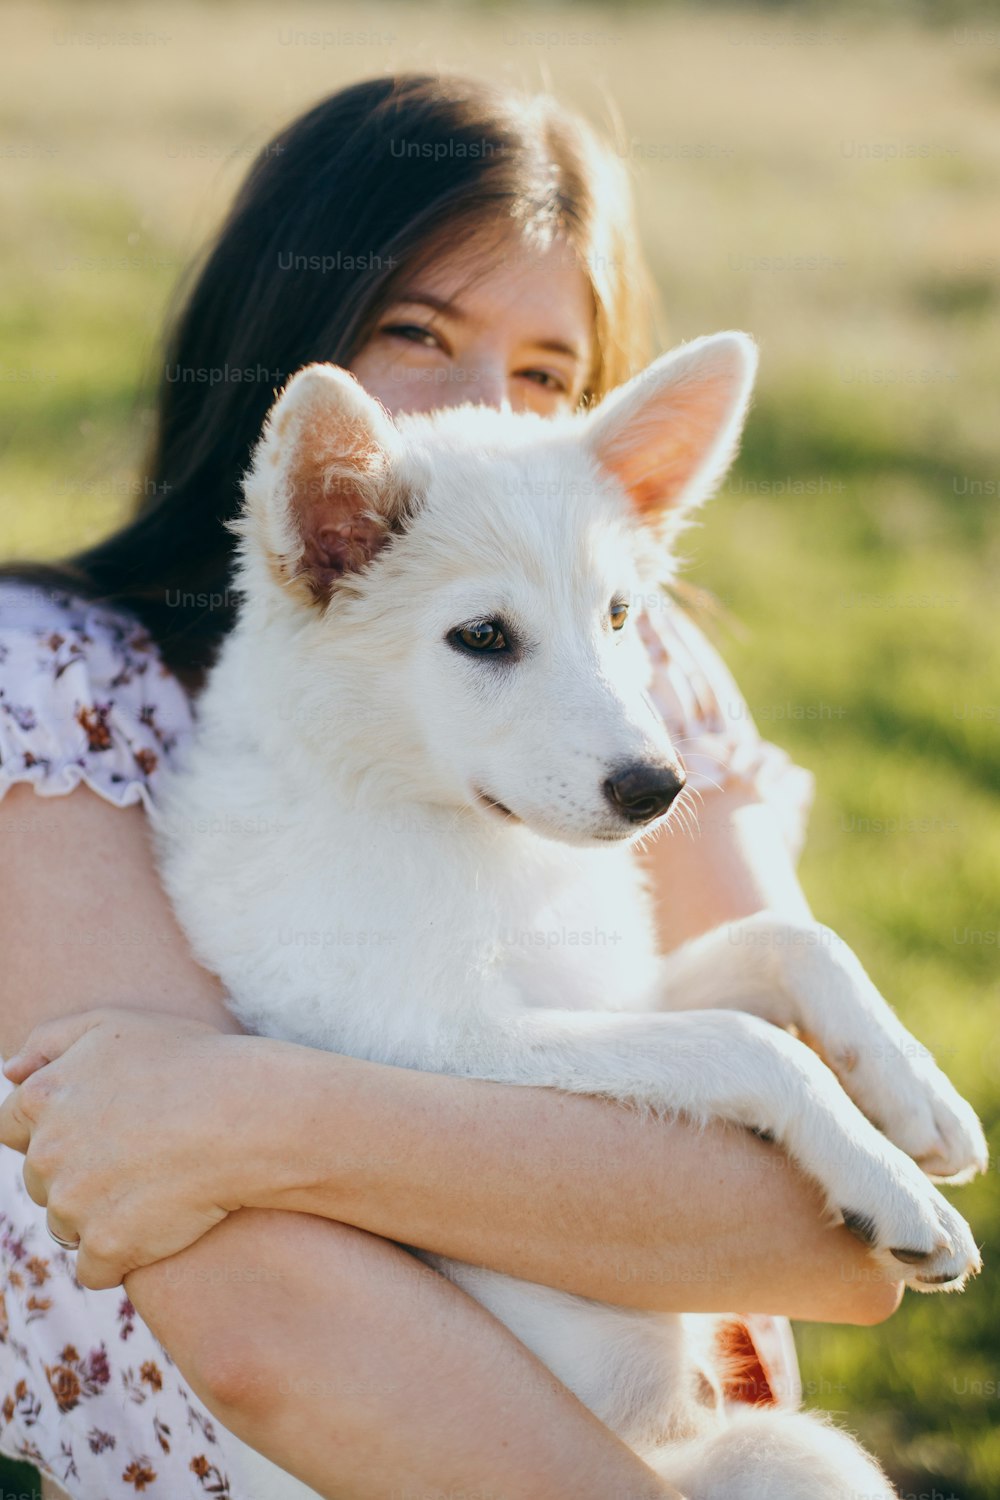 여름 초원의 따뜻한 일몰 빛 속에서 귀여운 흰색 강아지를 껴안고 있는 세련된 젊은 여성. 사랑스러운 솜털 강아지를 안고 있는 행복한 소녀. 아름다운 분위기의 순간. 채택 개념입니다.